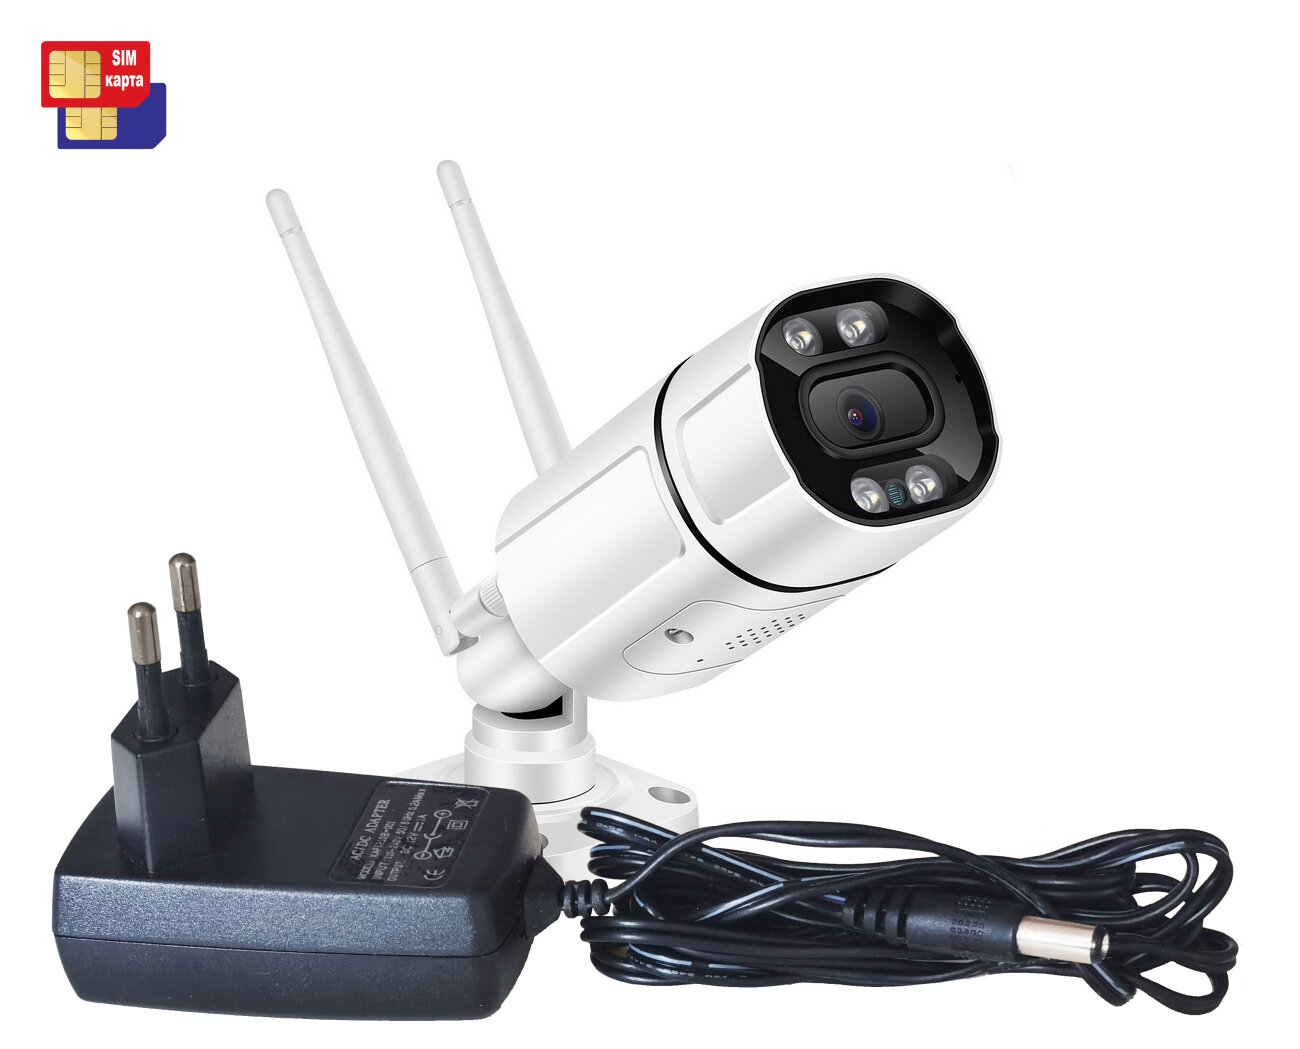 HD ком 3MP-4G Mod: SE248 (C99859FPA) - влагозащищена 4G IP-камера наблюдения с СИМ картой. Ночная подсветка. Поддержка аудио, датчик движения